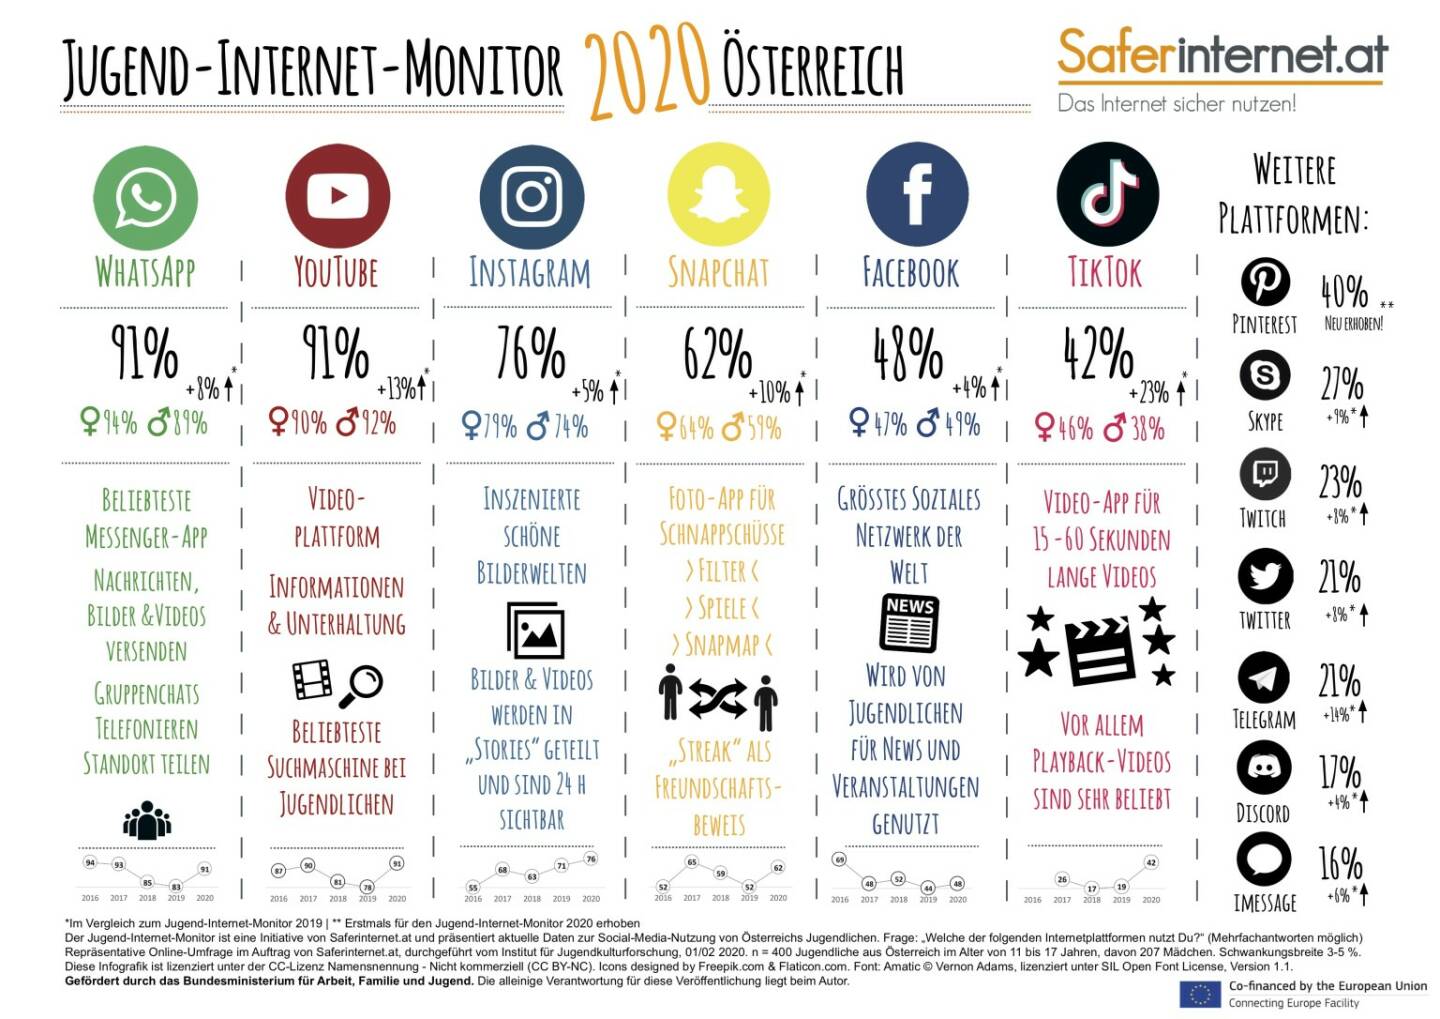 Saferinternet.at: Jugend-Internet-Monitor 2020: Das sind die beliebtesten Sozialen Netzwerke: Die Top-3-Netzwerke sind WhatsApp, YouTube und Instagram. TikTok wächst am stärksten, neu erhoben wurden Pinterest sowie die beliebtesten Streaming-Dienste. Fotocredit:CC BY-NC / Saferinternet.at